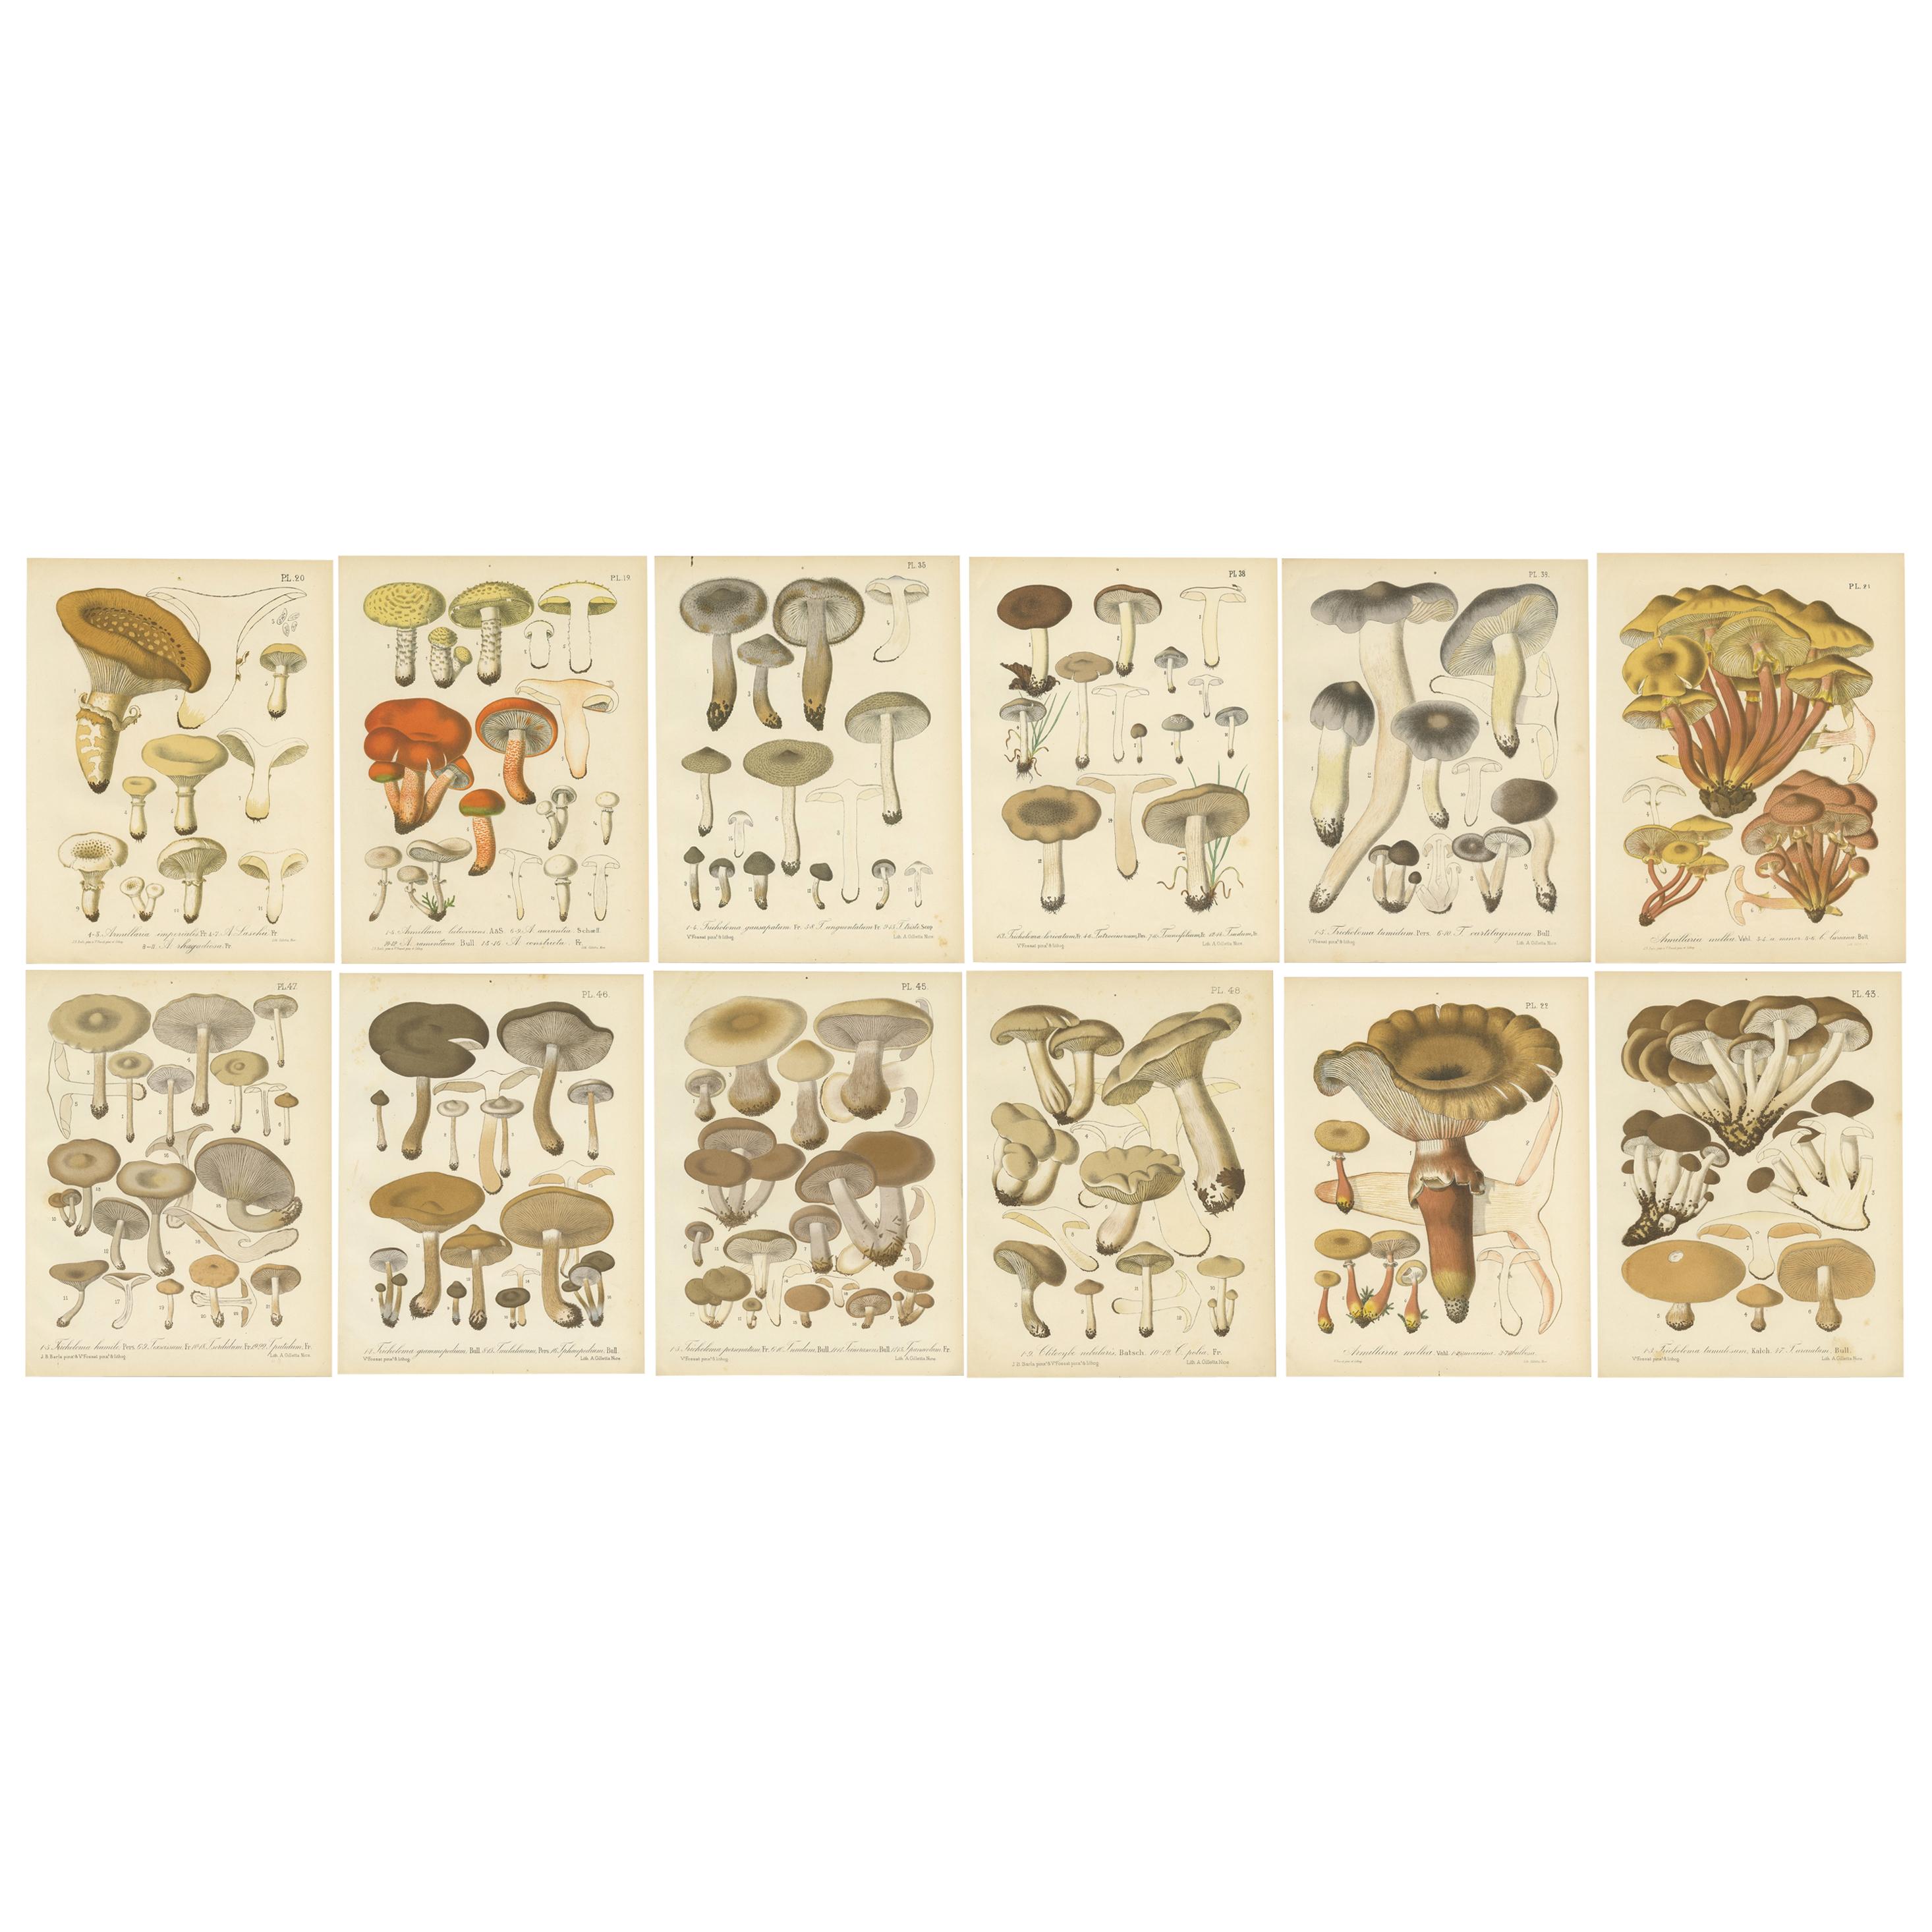 Ensemble de 12 estampes anciennes de mycologie de divers Fungi par Barla, vers 1890